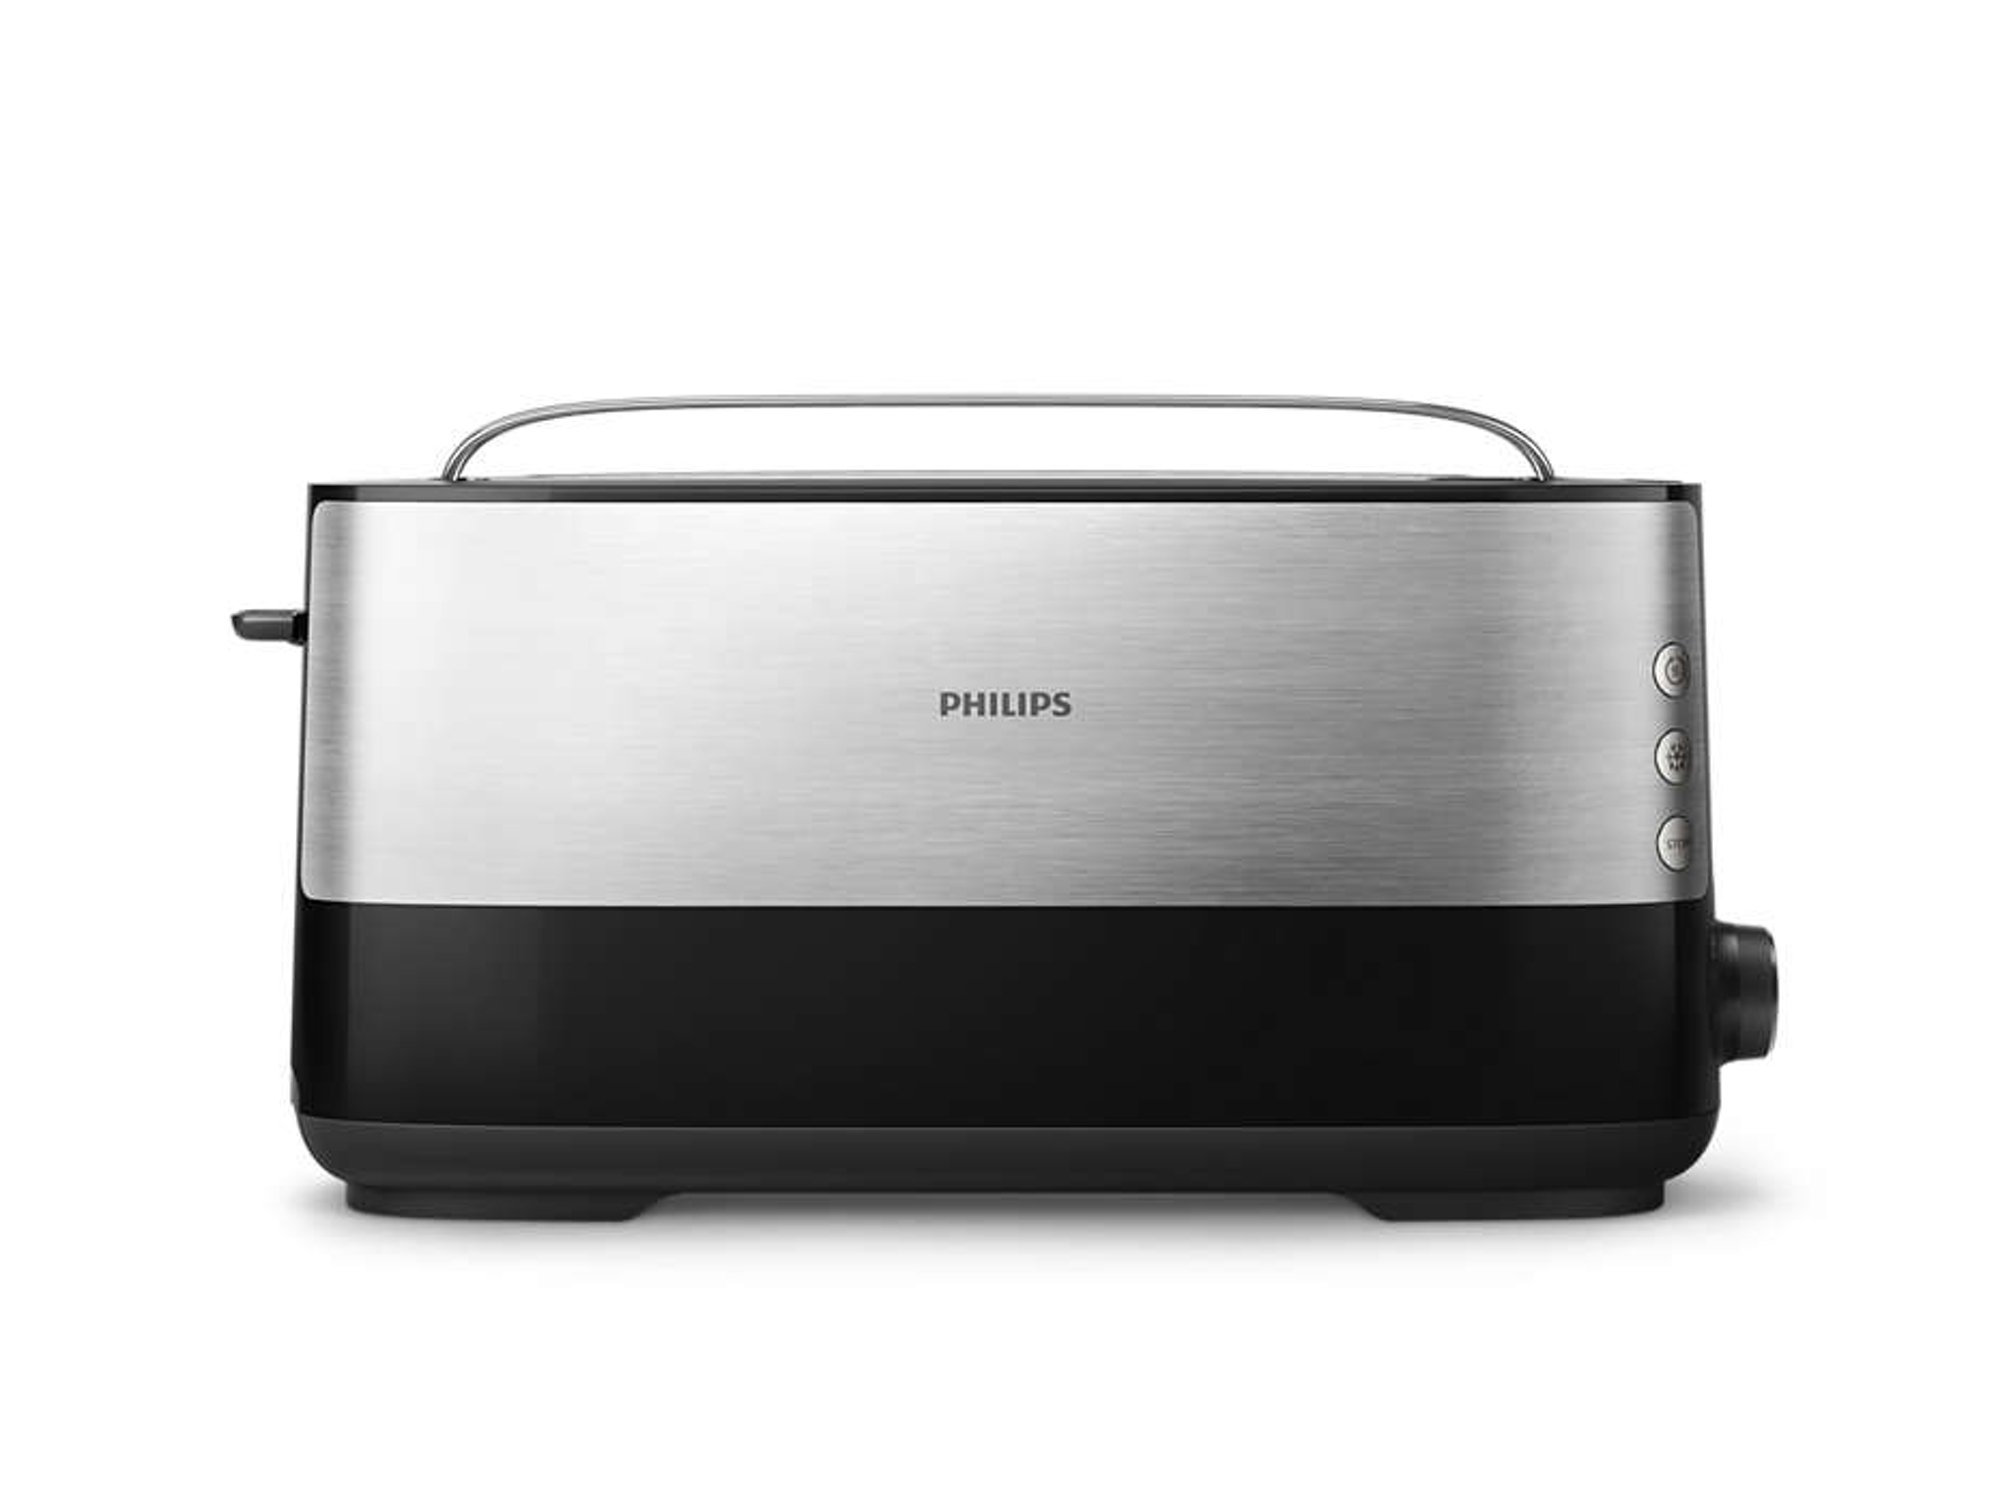 Philips Daily Hd269290 tostador 950w ranura extra larga 8 funciones color negro collection acero inoxidable con y para panecillos 1 1030